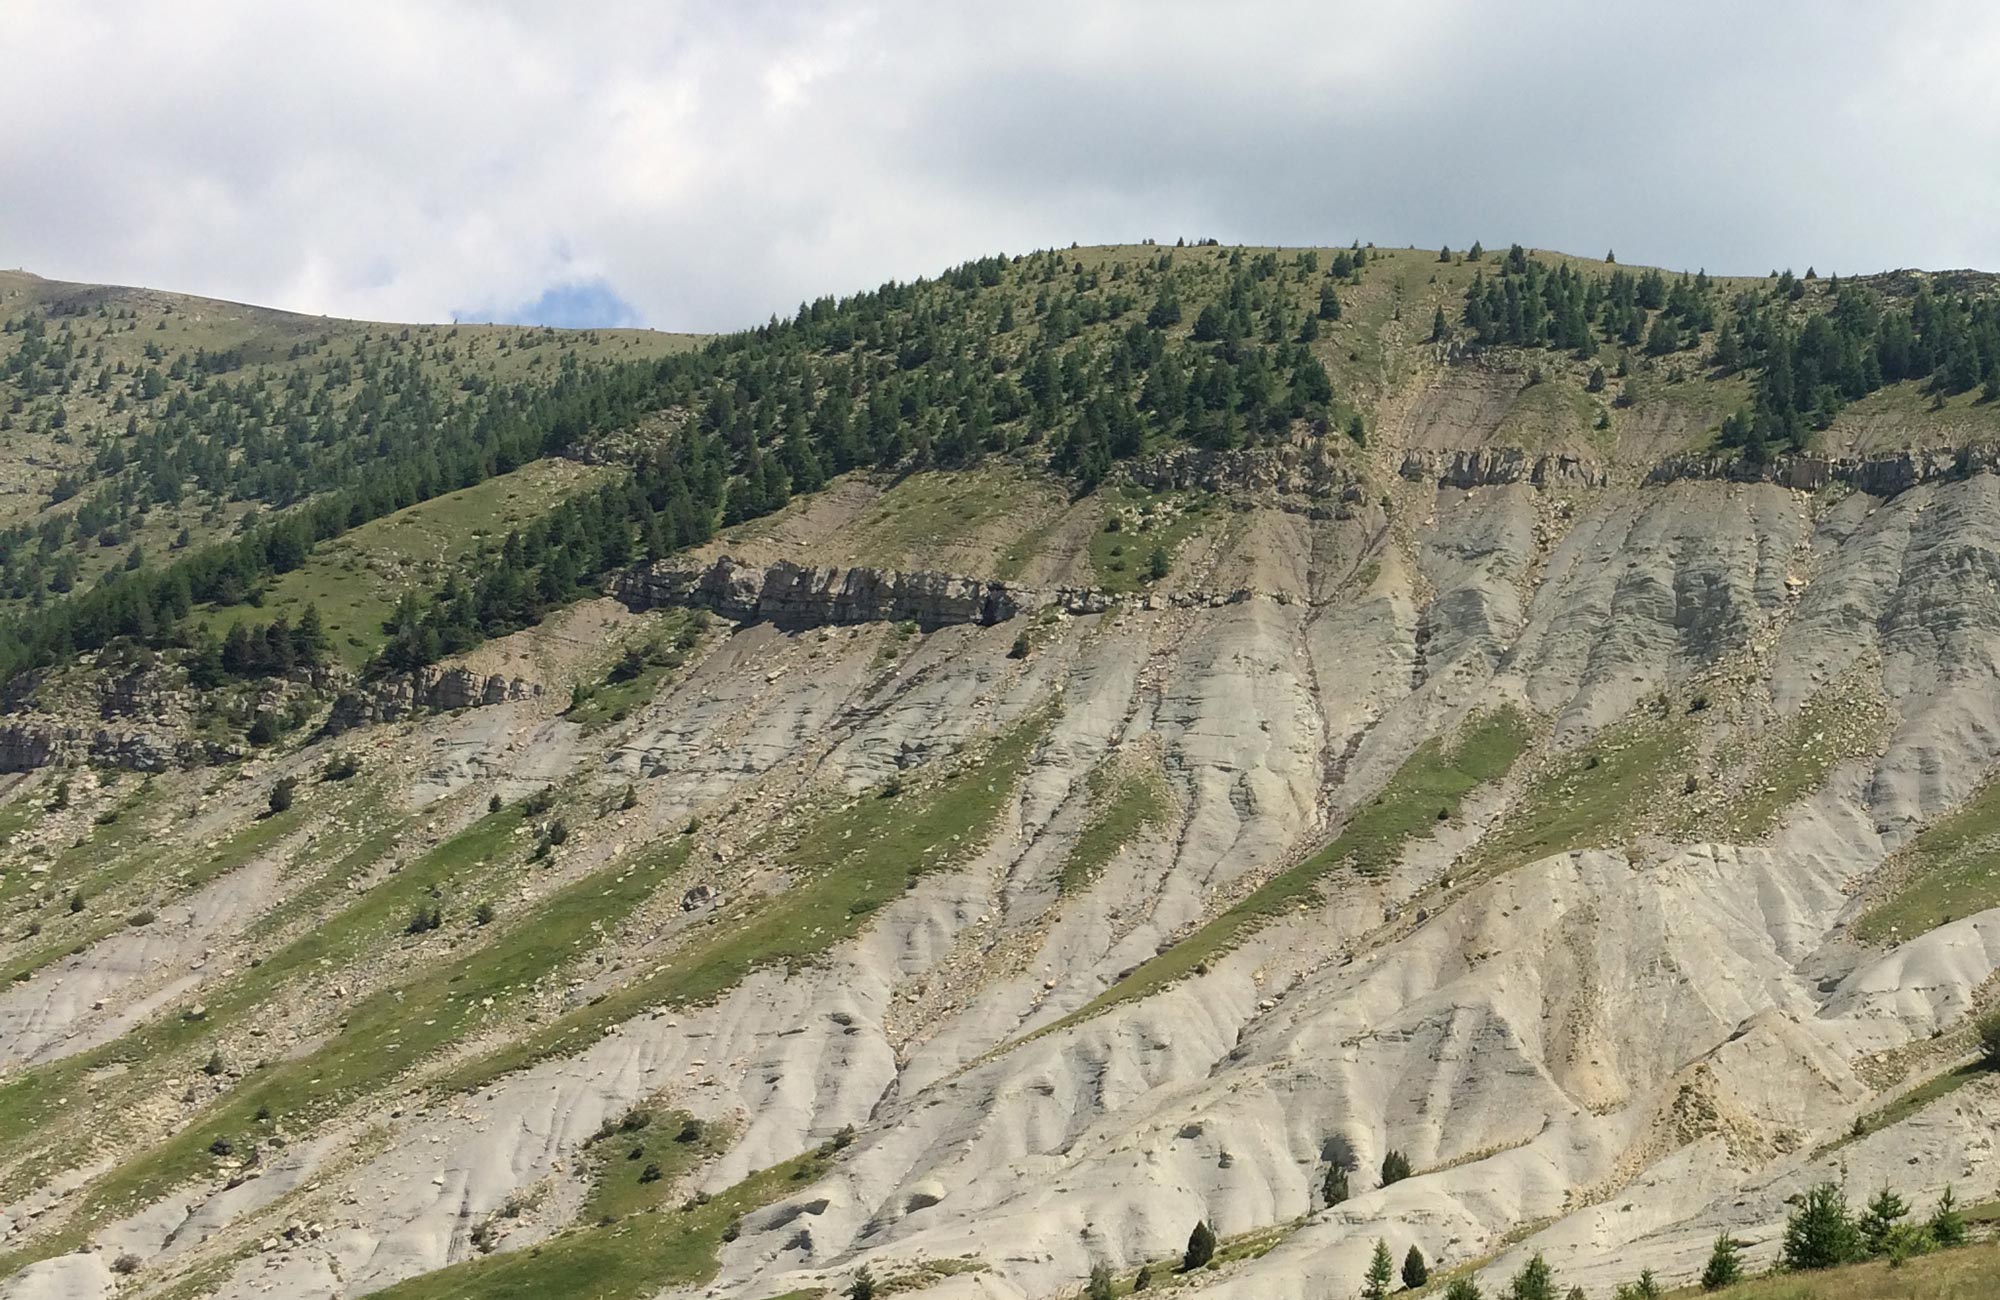 Are stratigraphic traps more risky?